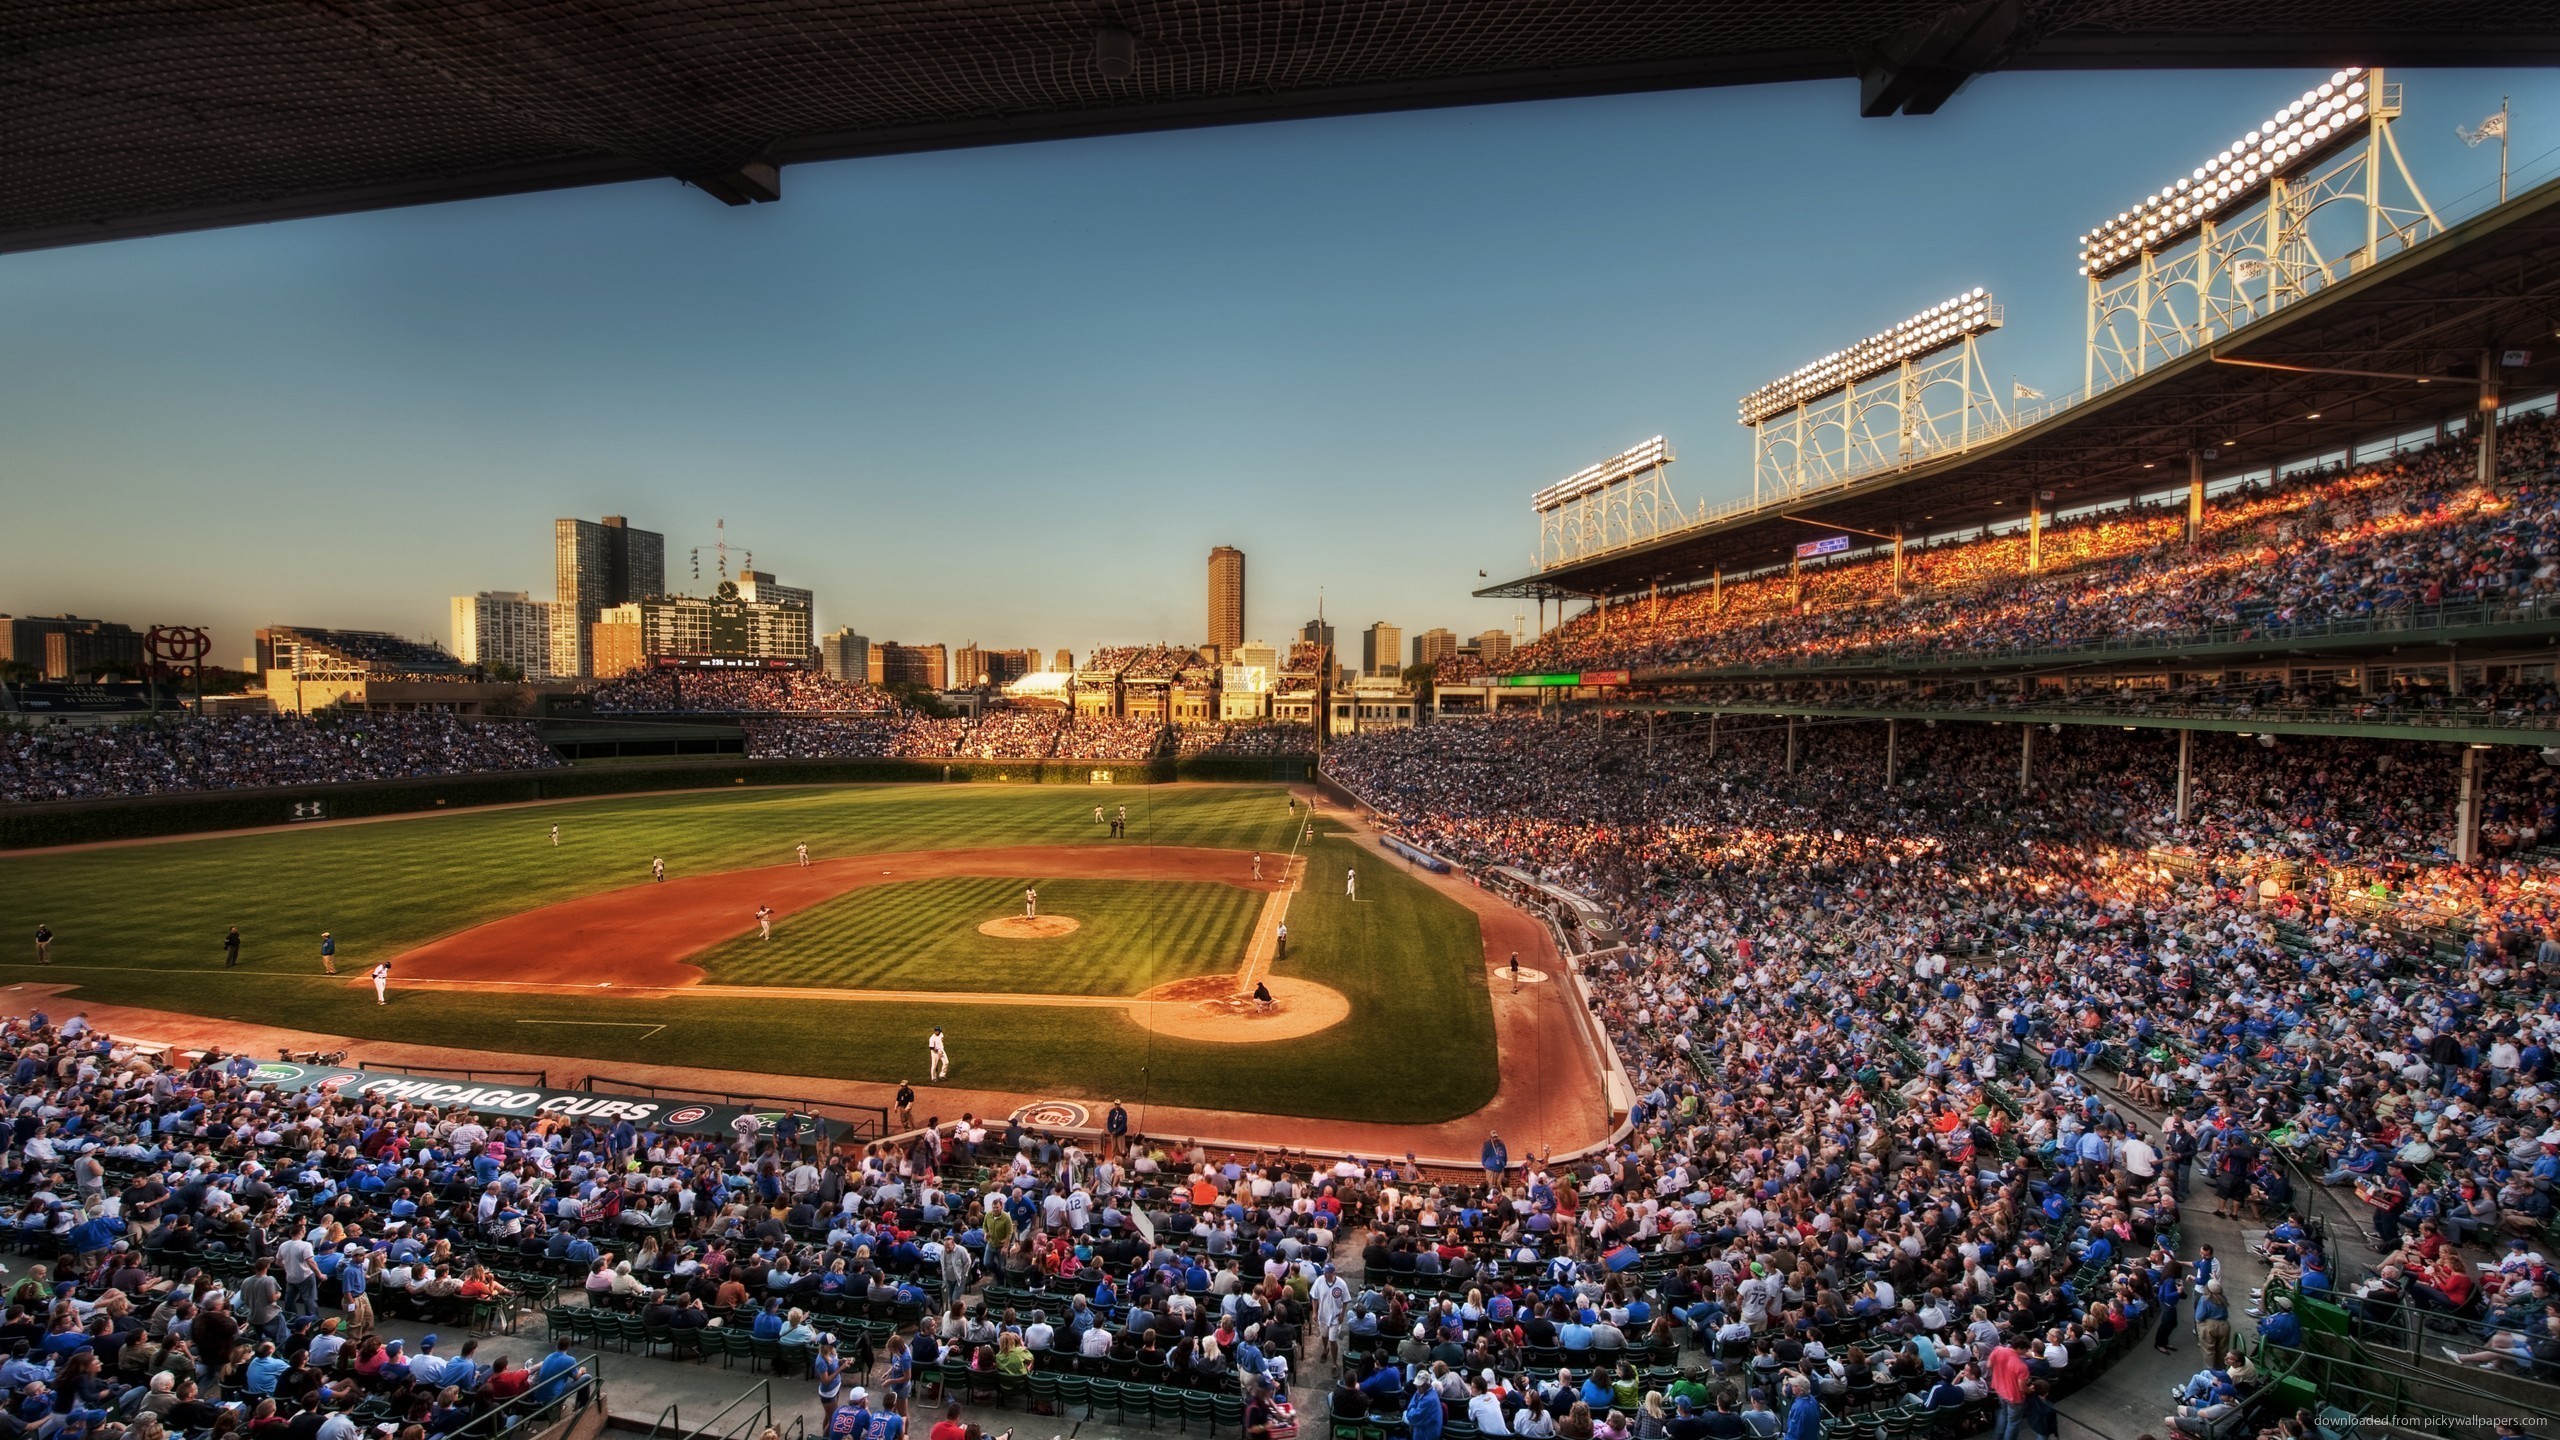 2560x1440 Chicago Cubs Stadium for 